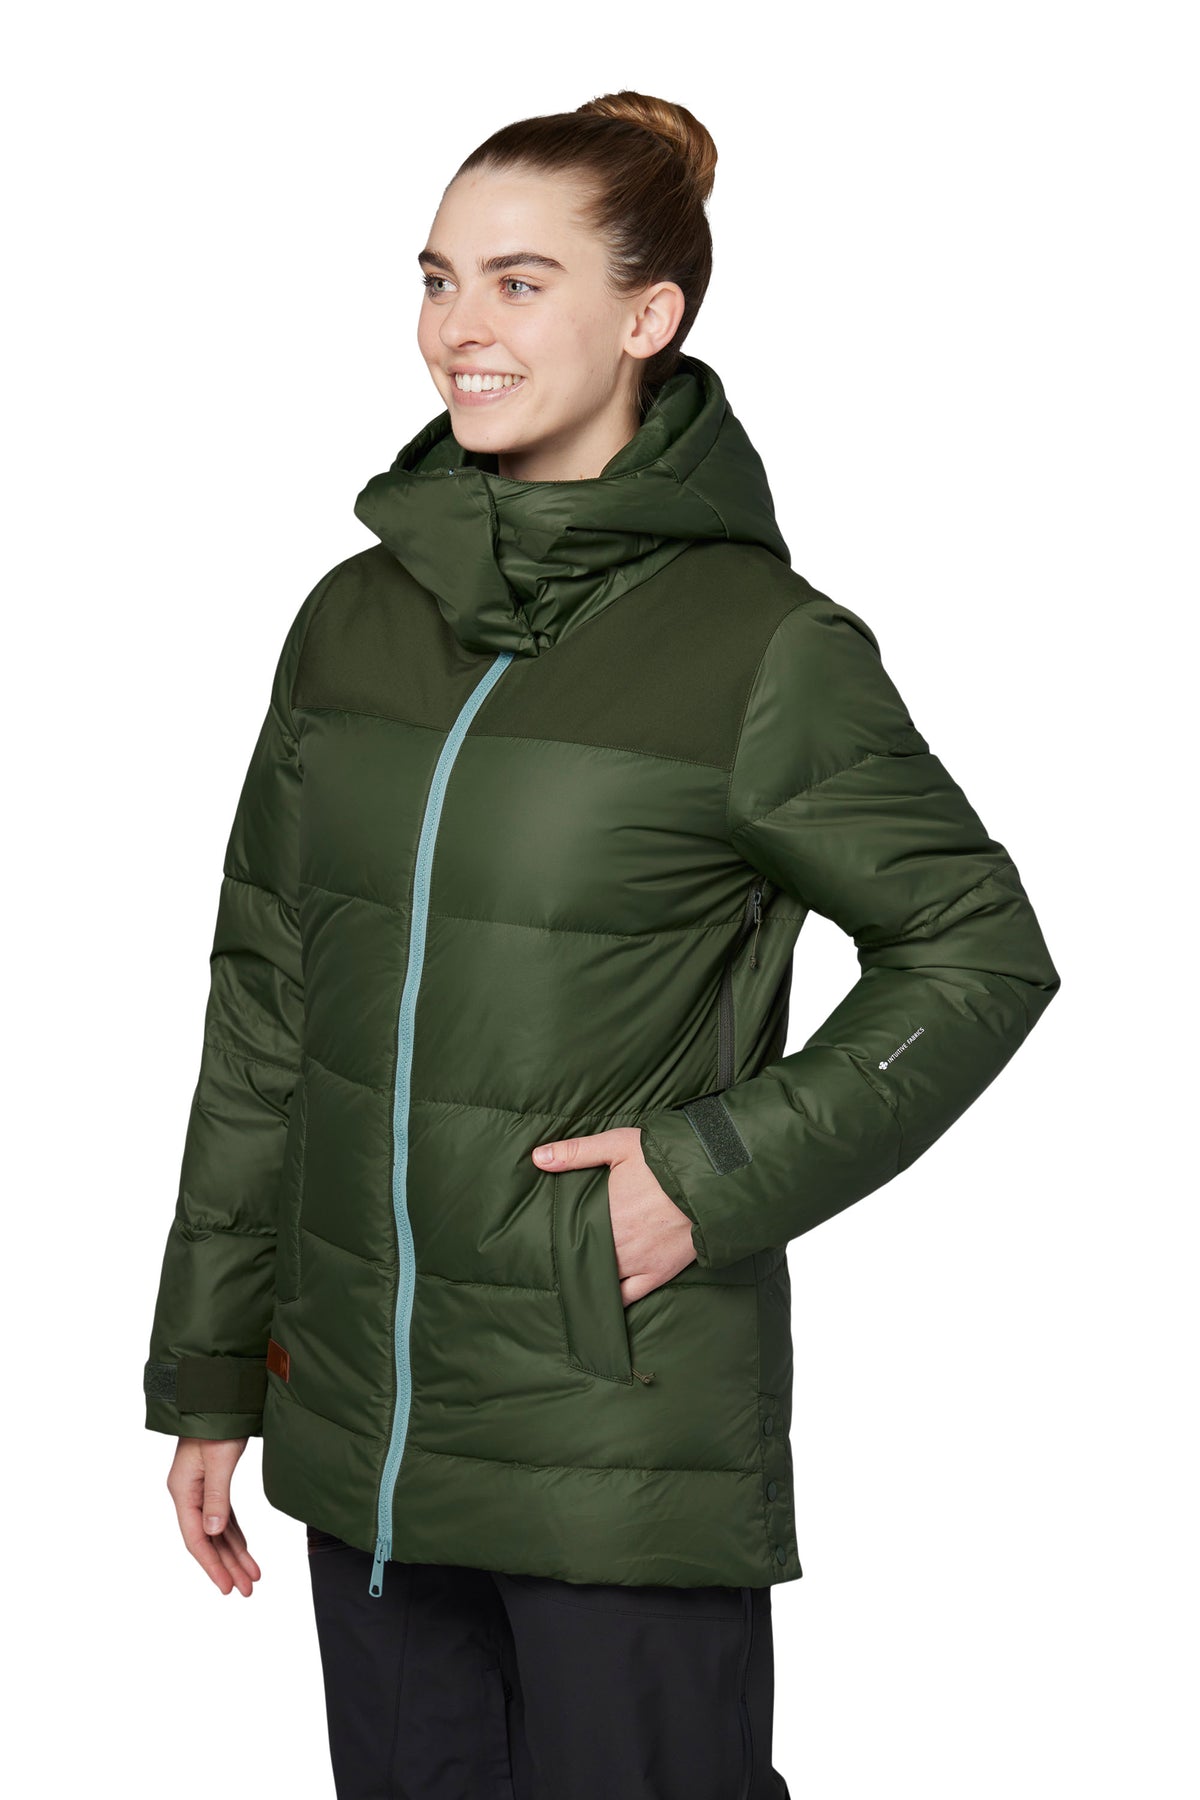 Kenzie Jacket - Women's Insulated Ski Jacket